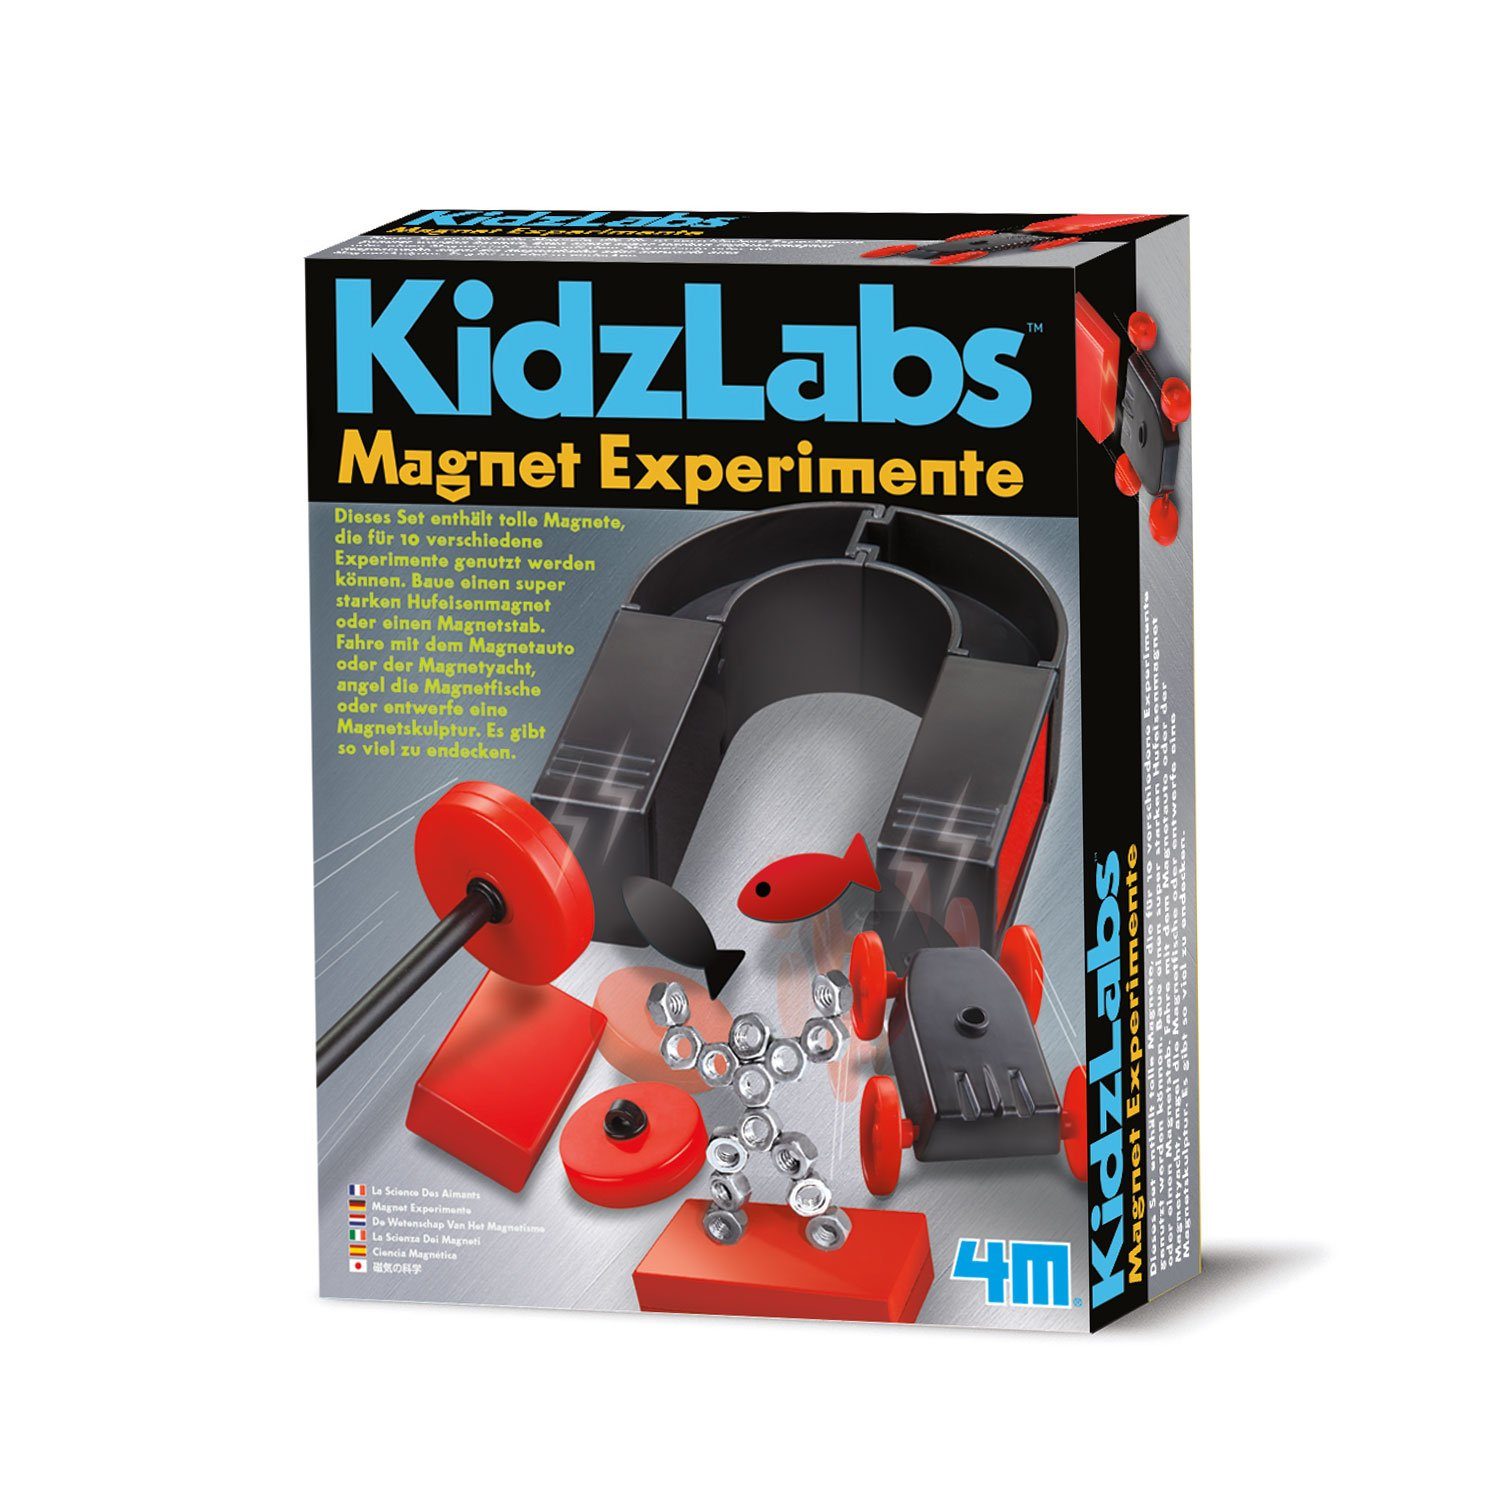 Günstige Preise KidzLabs 3D-Puzzle Magnet Experimente, Anleitung, mit Figuren, Magnetspiel Puzzleteile inkl